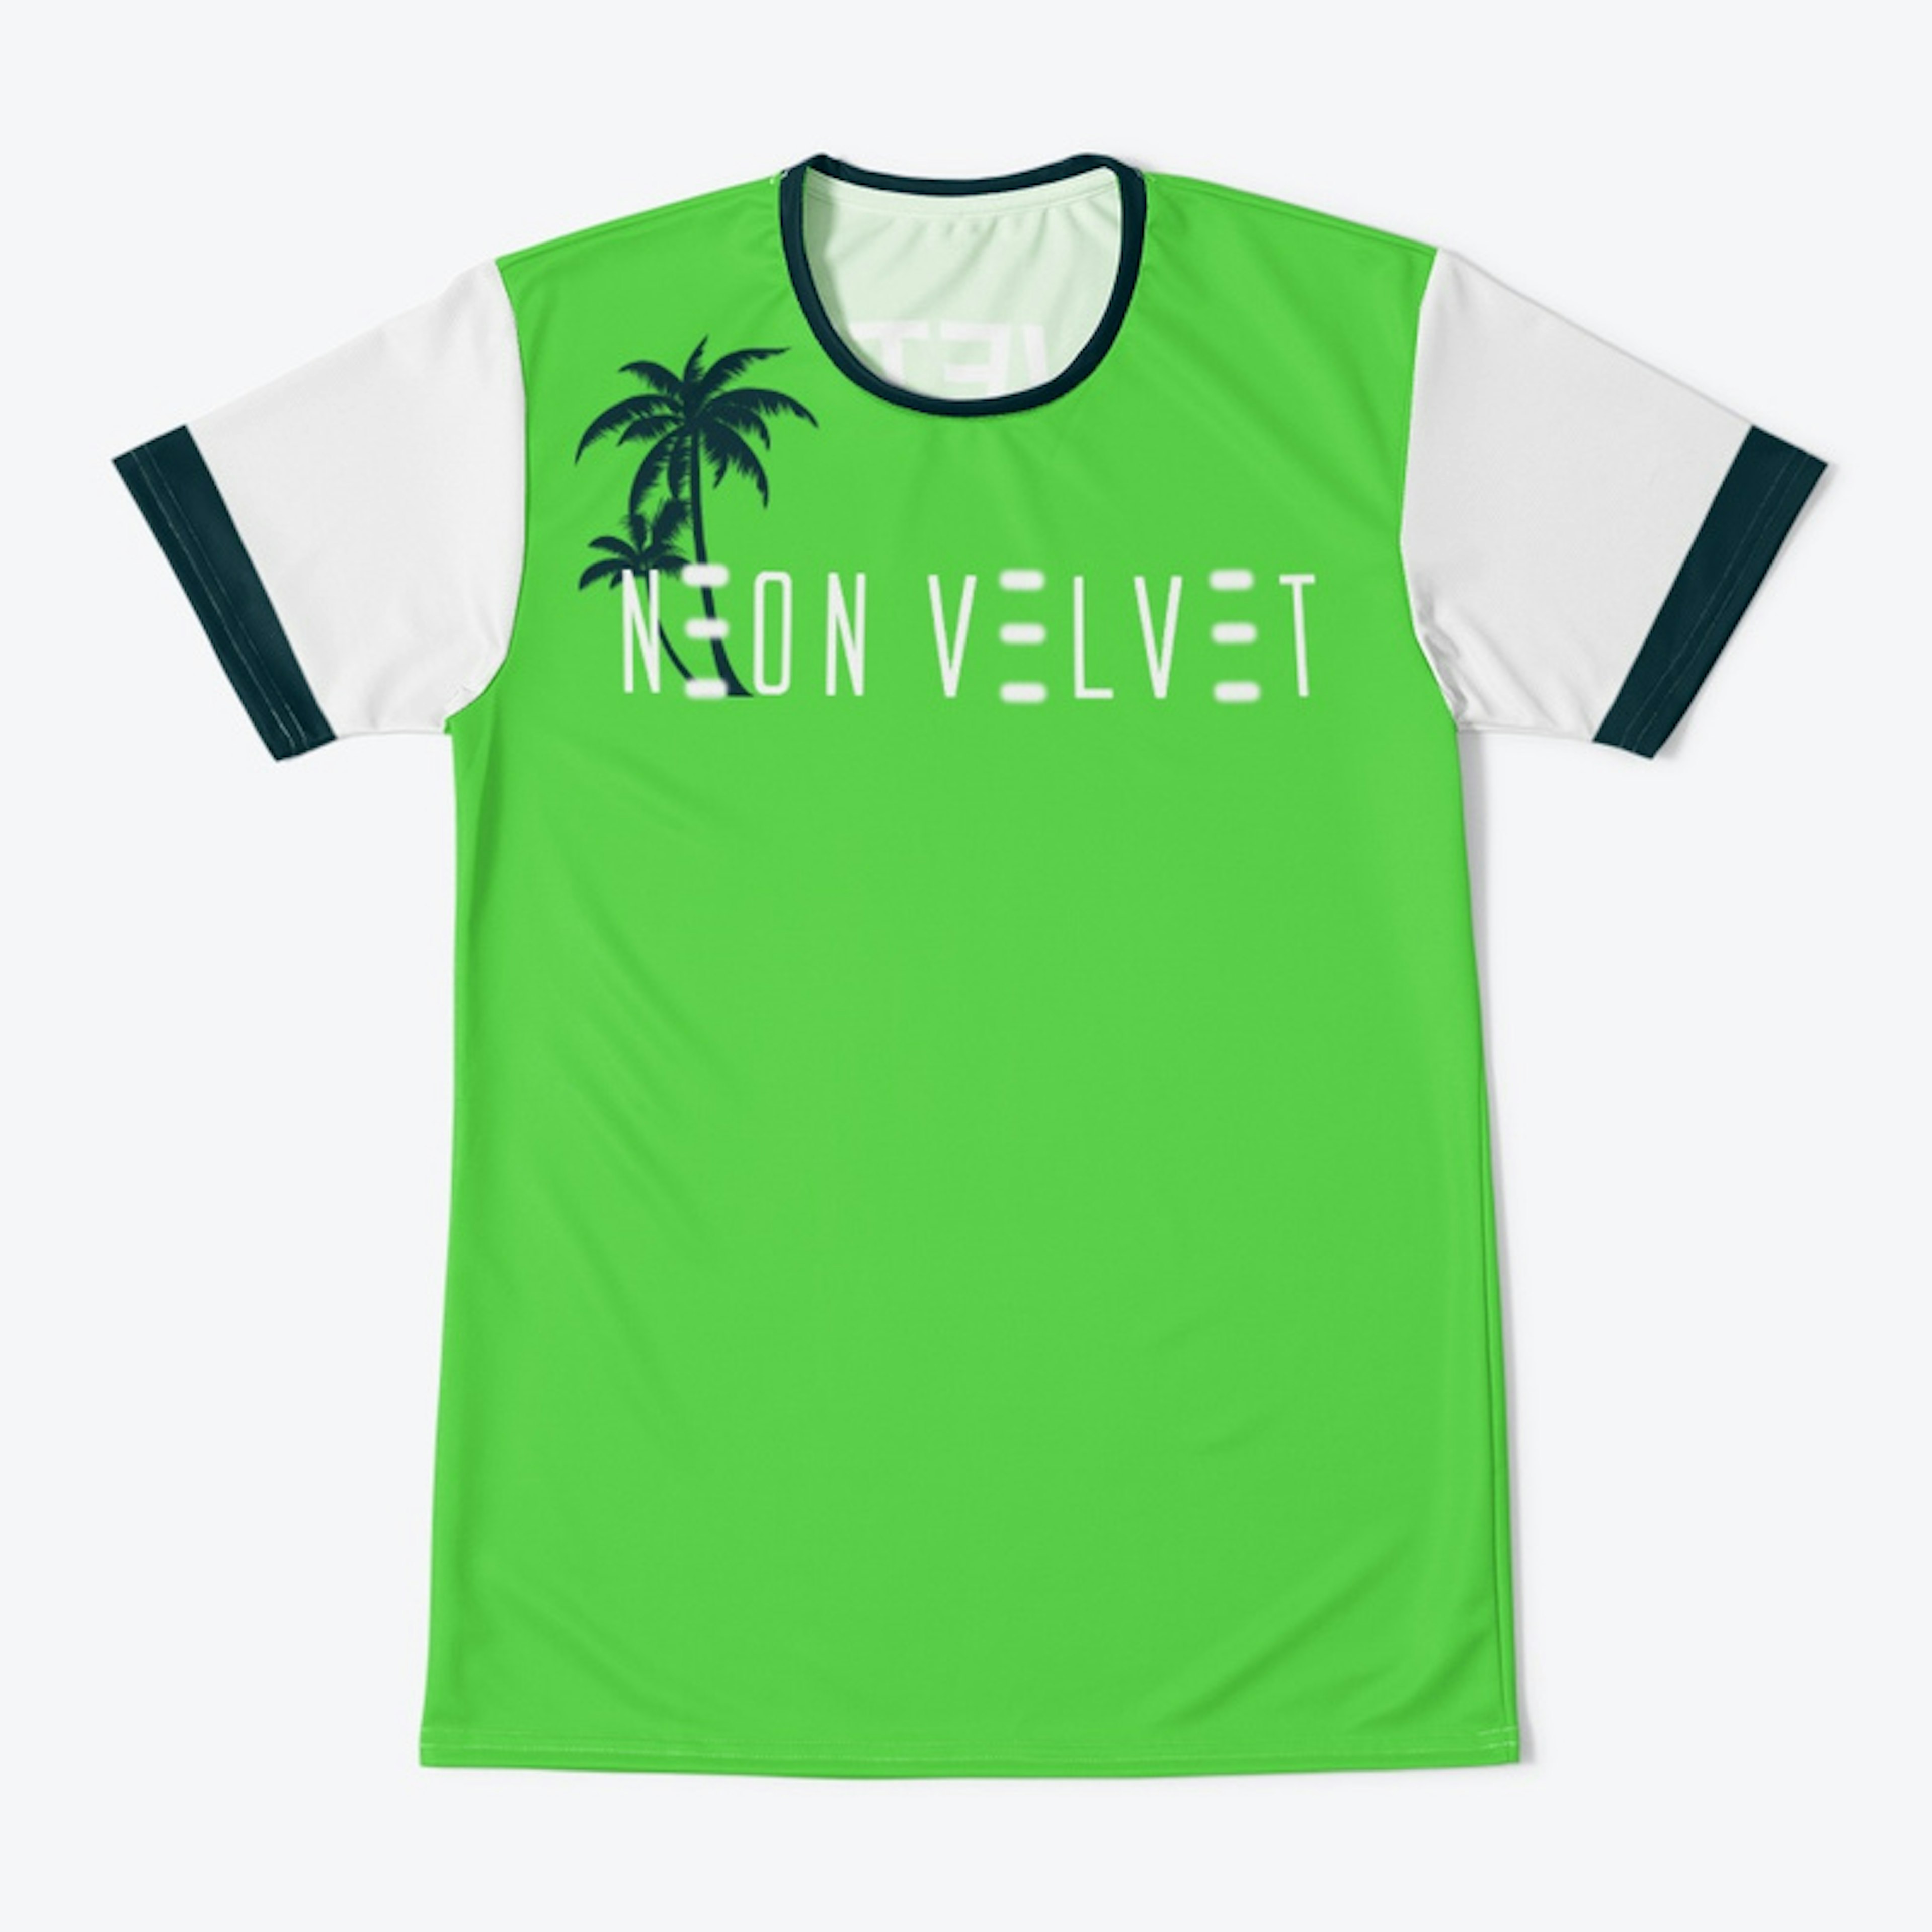 Neon Velvet Original Logo 